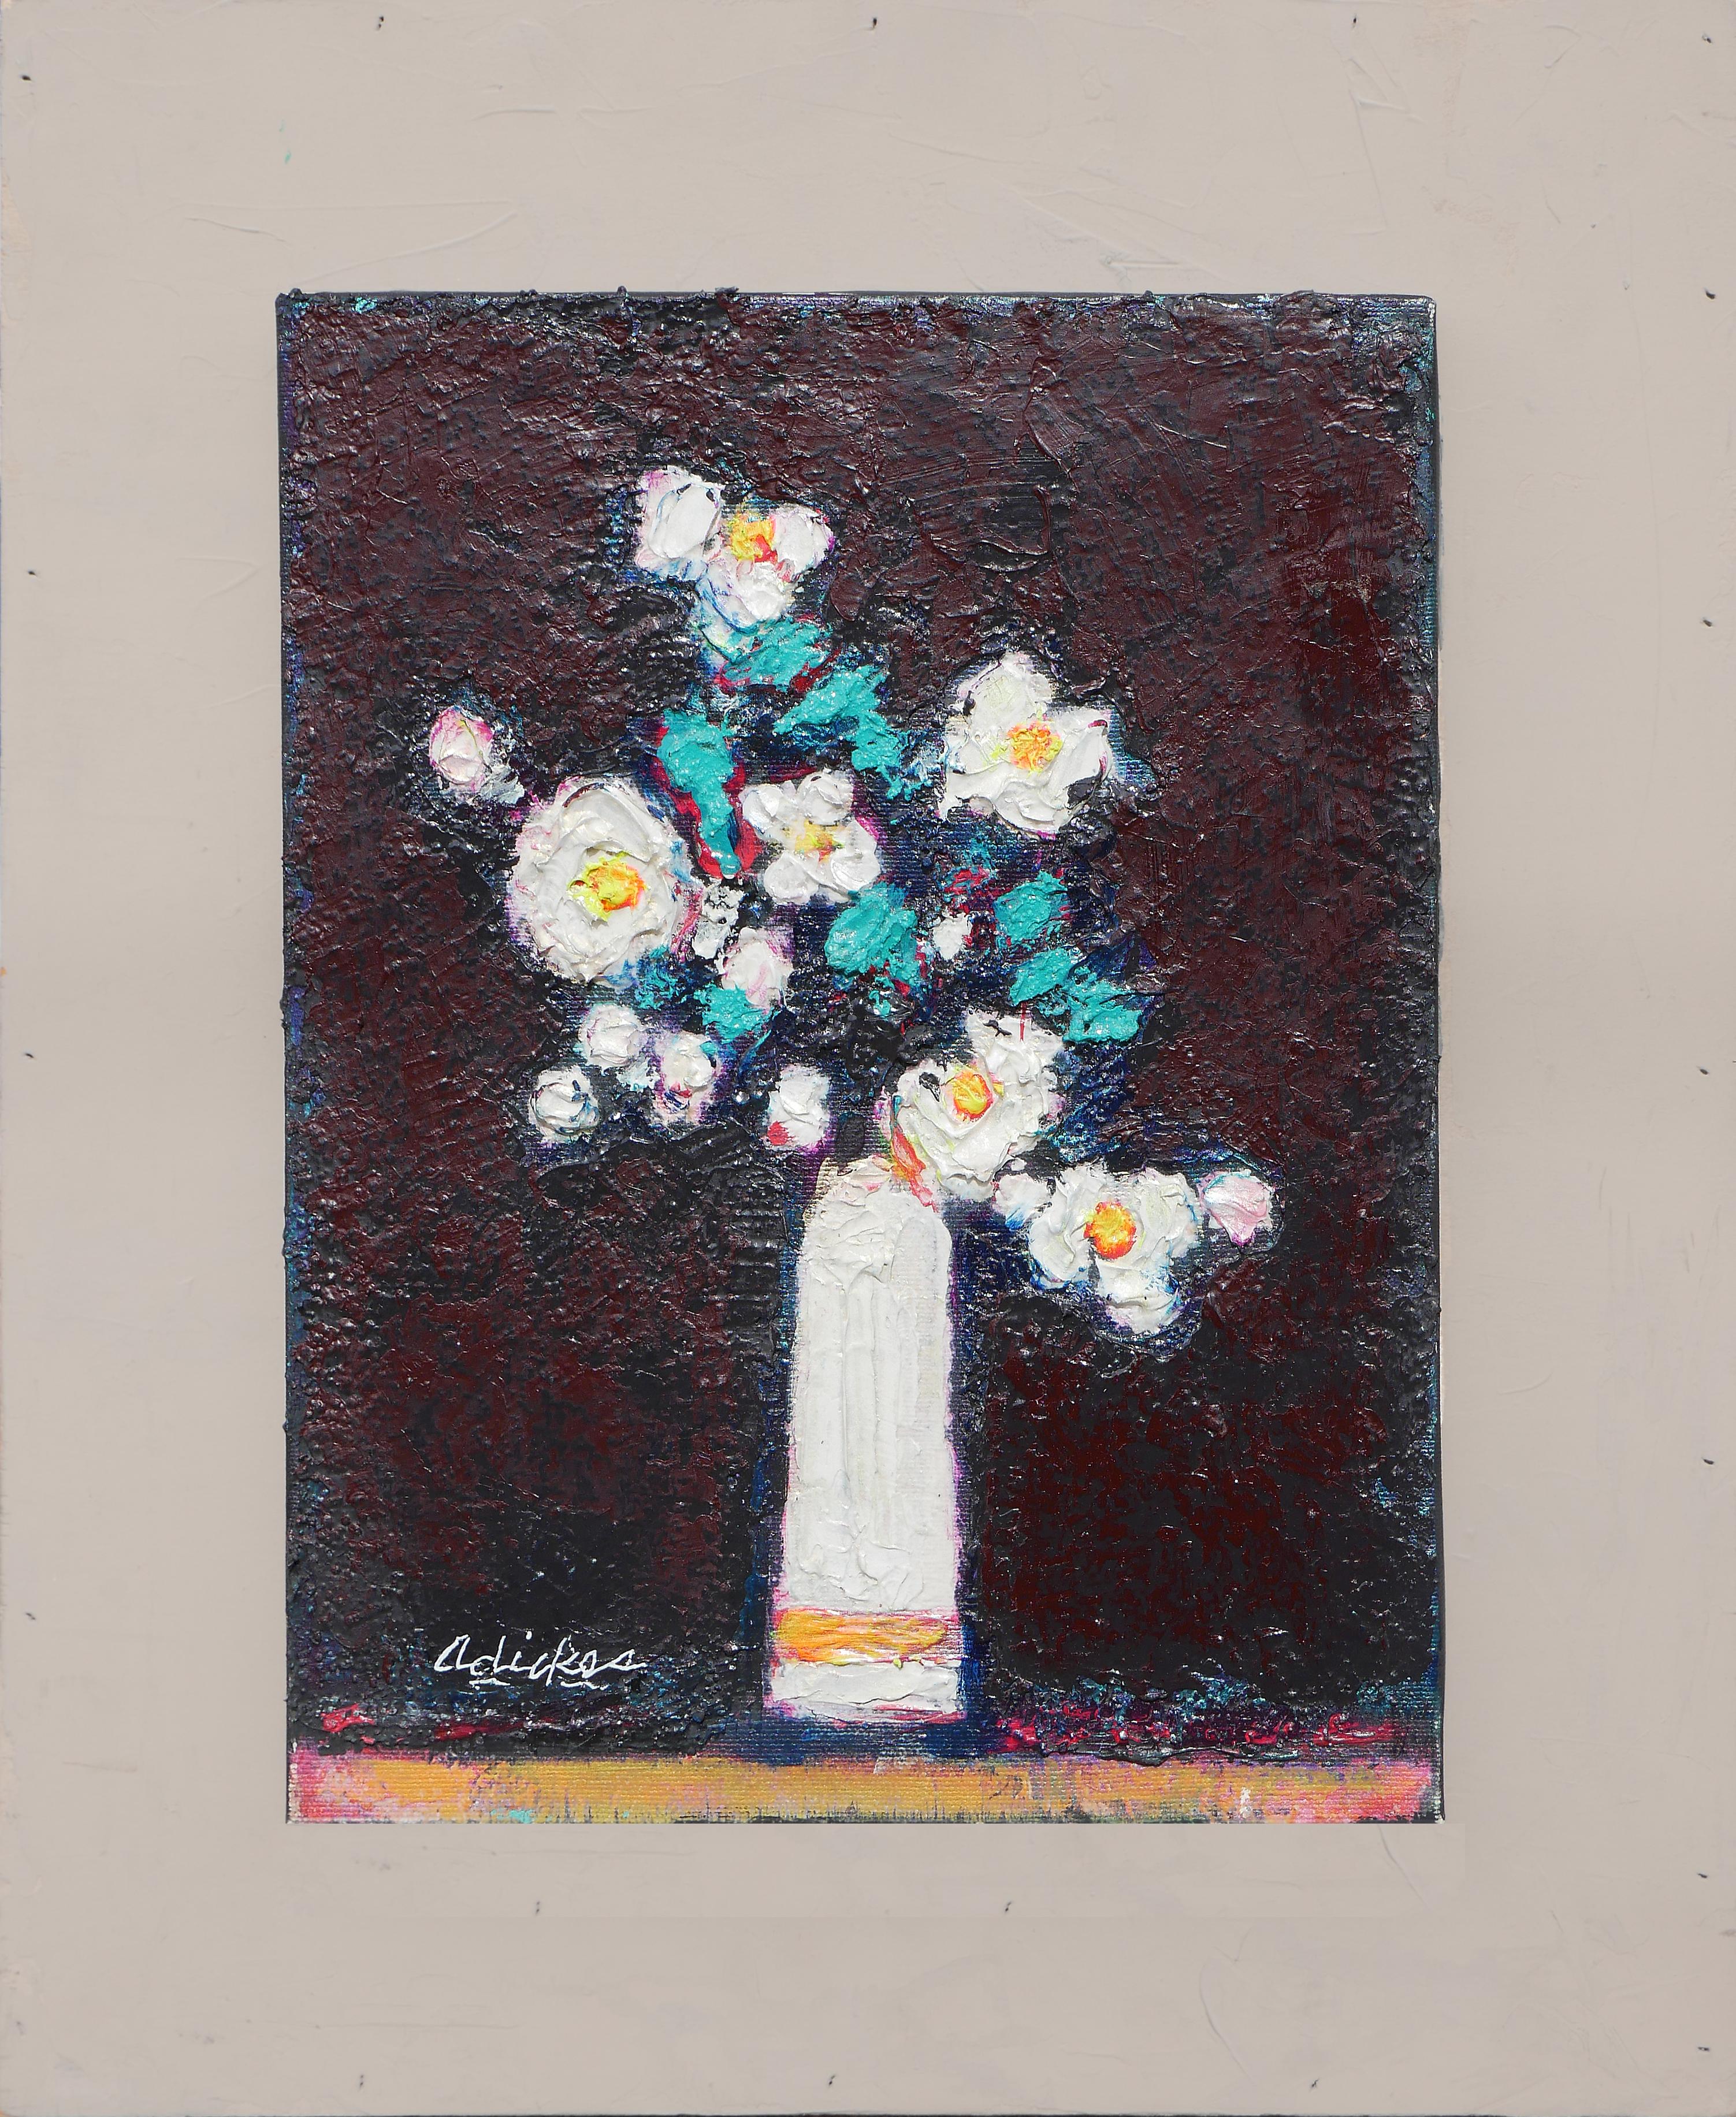 Abstract Painting David Adickes - "Fleurs blanches, vase blanc" Peinture de nature morte florale abstraite moderne de Daises